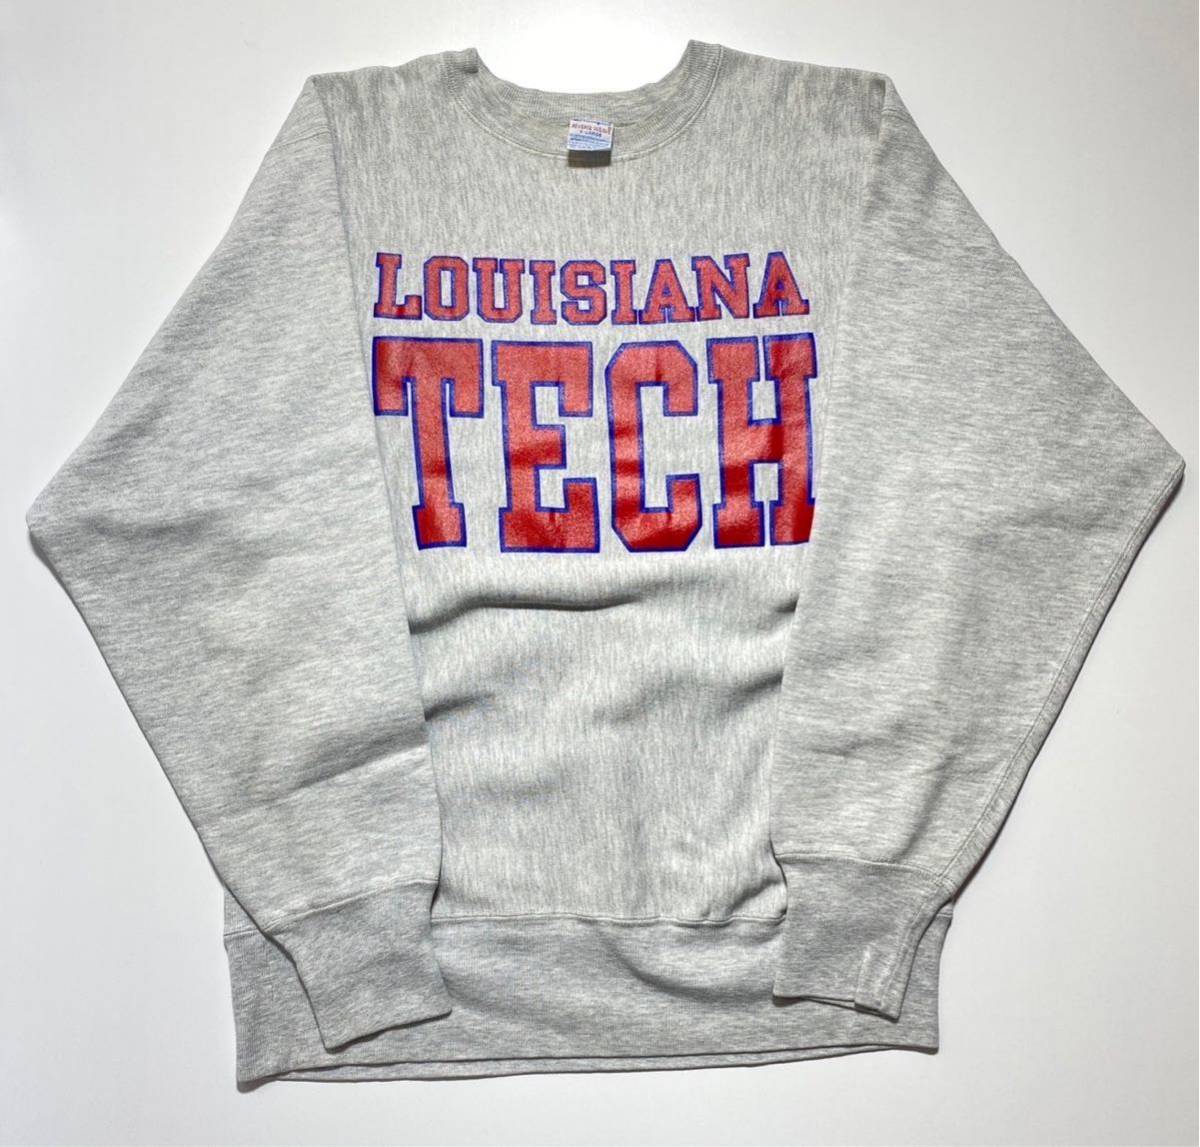 【XL】1990s Champion Reverse Weave Louisiana Tech 1990年代 チャンピオン リバースウィーブ ルイジアナテック USA製 刺繍タグ G2170